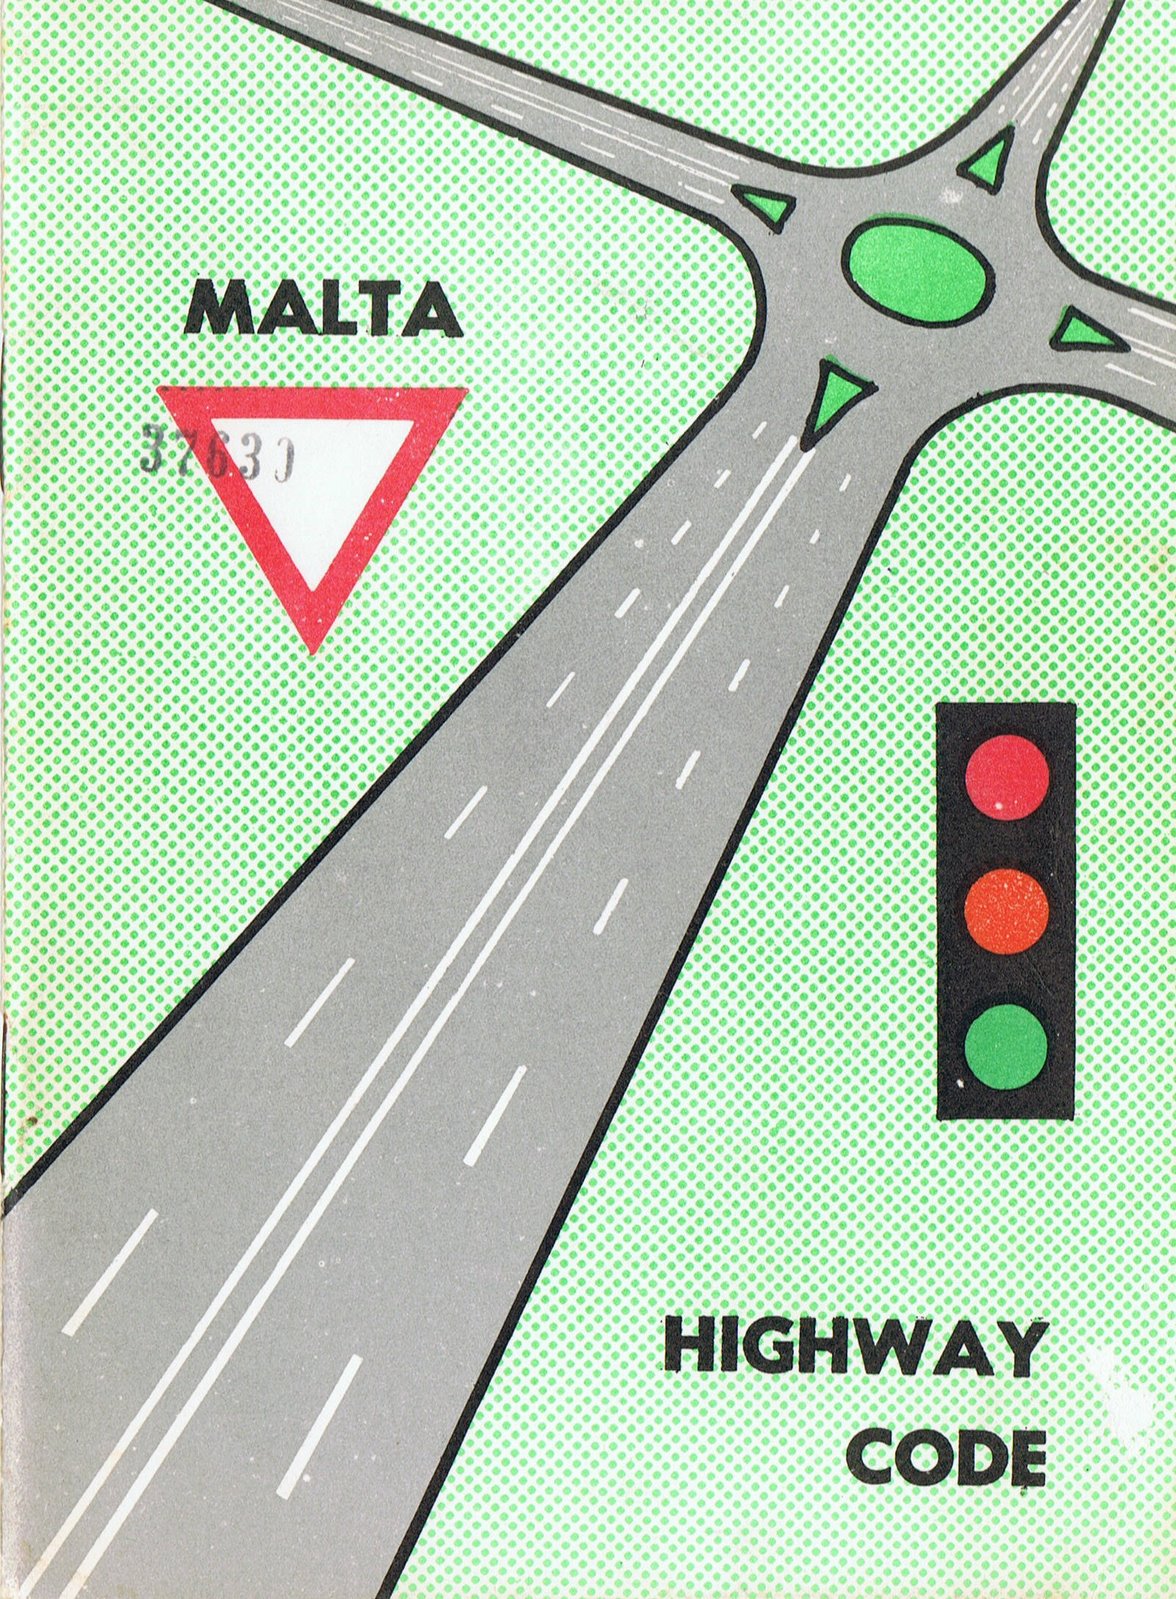 [malta+highway+code.jpg]